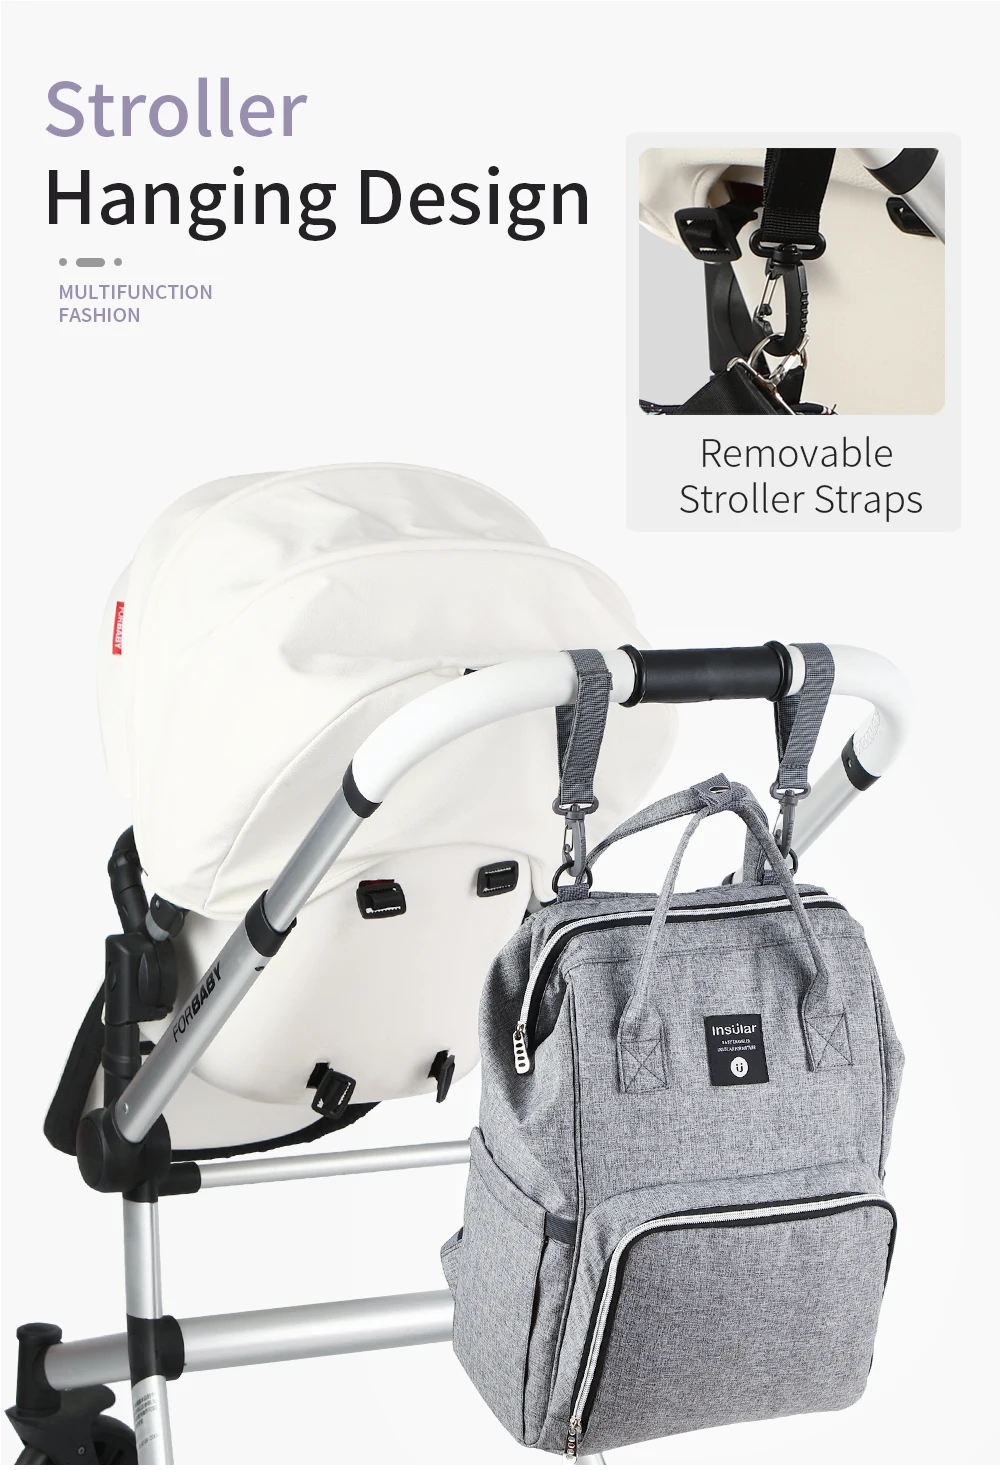 Insular детский рюкзак для подгузников, сумка для мам, сумка для подгузников для мам, сумка для коляски, большая вместительная детская сумка, рюкзак для путешествий, дизайнерская сумка для кормления